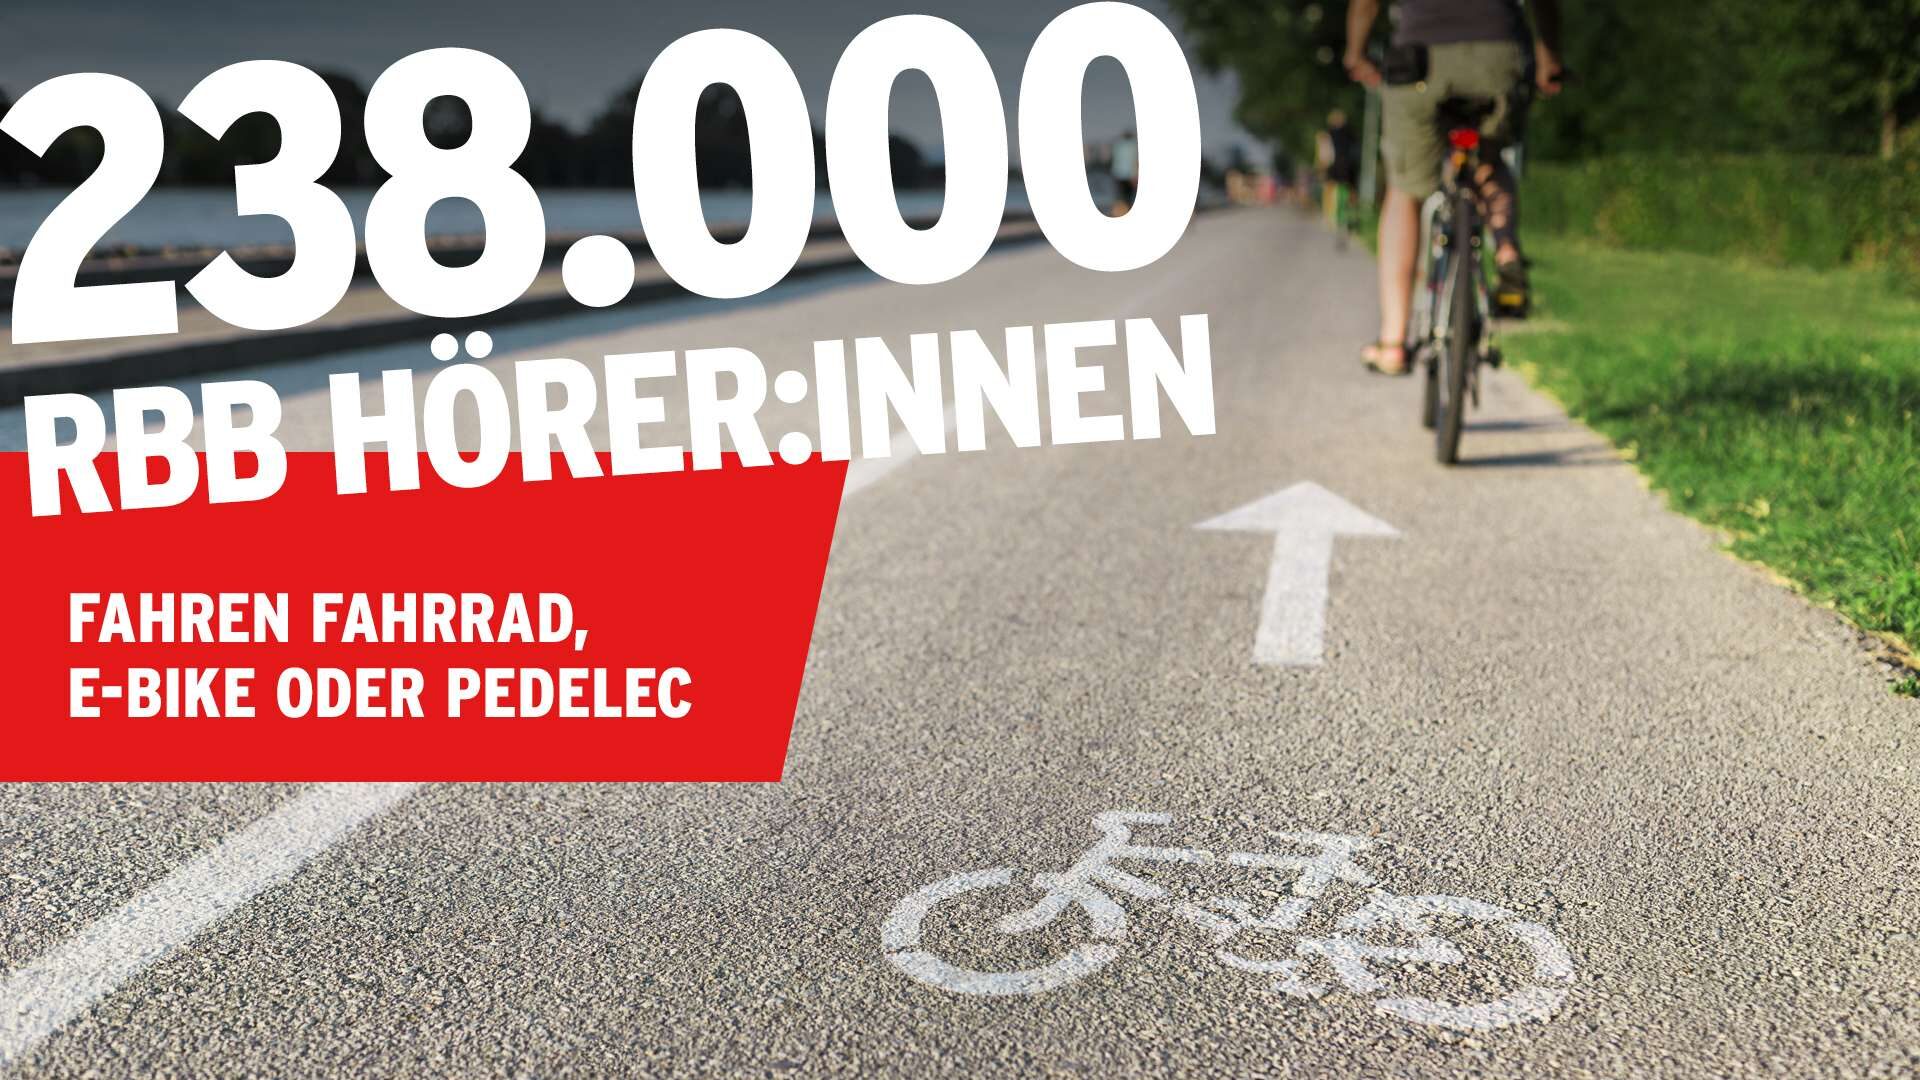 "238.000 rbb Hörer:innen fahren Fahrrad, E-Bike oder Pedelec" steht in weißer Schrift vor dem Bild eines Fahrradweges an einem Flussufer